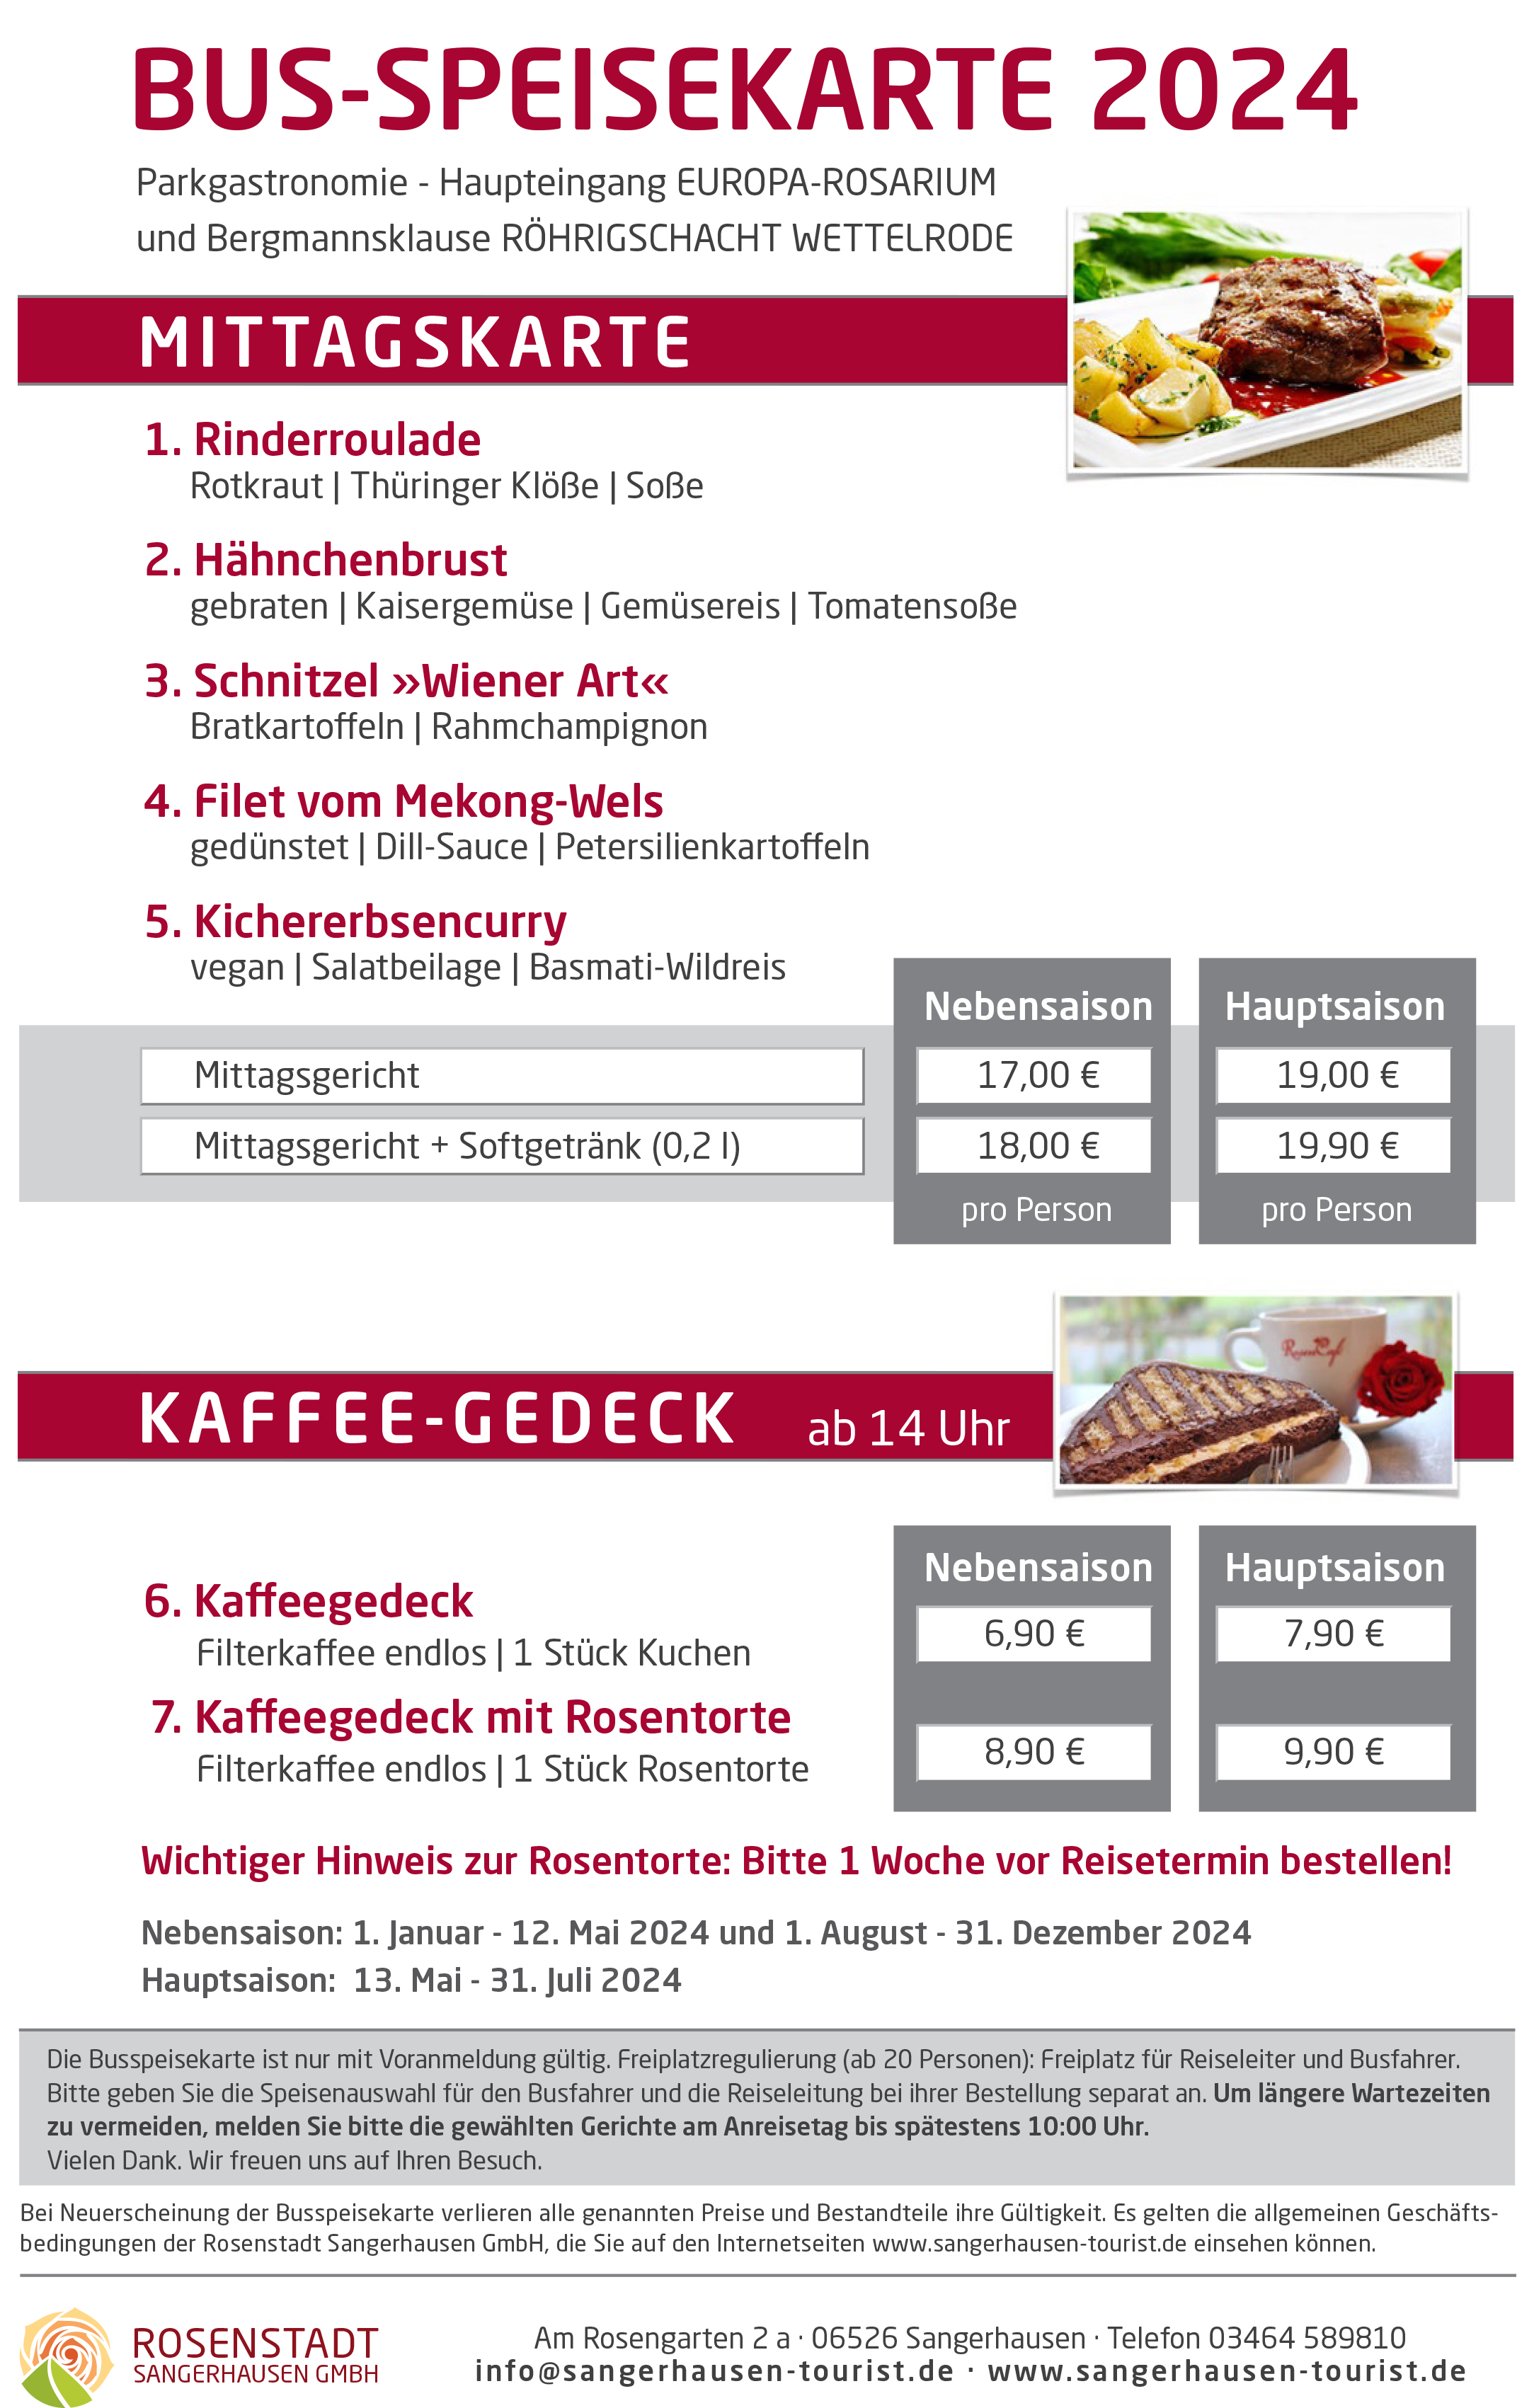 Kaffeegedeck mit Rosentorte im Europa-Rosarium Sangerhausen